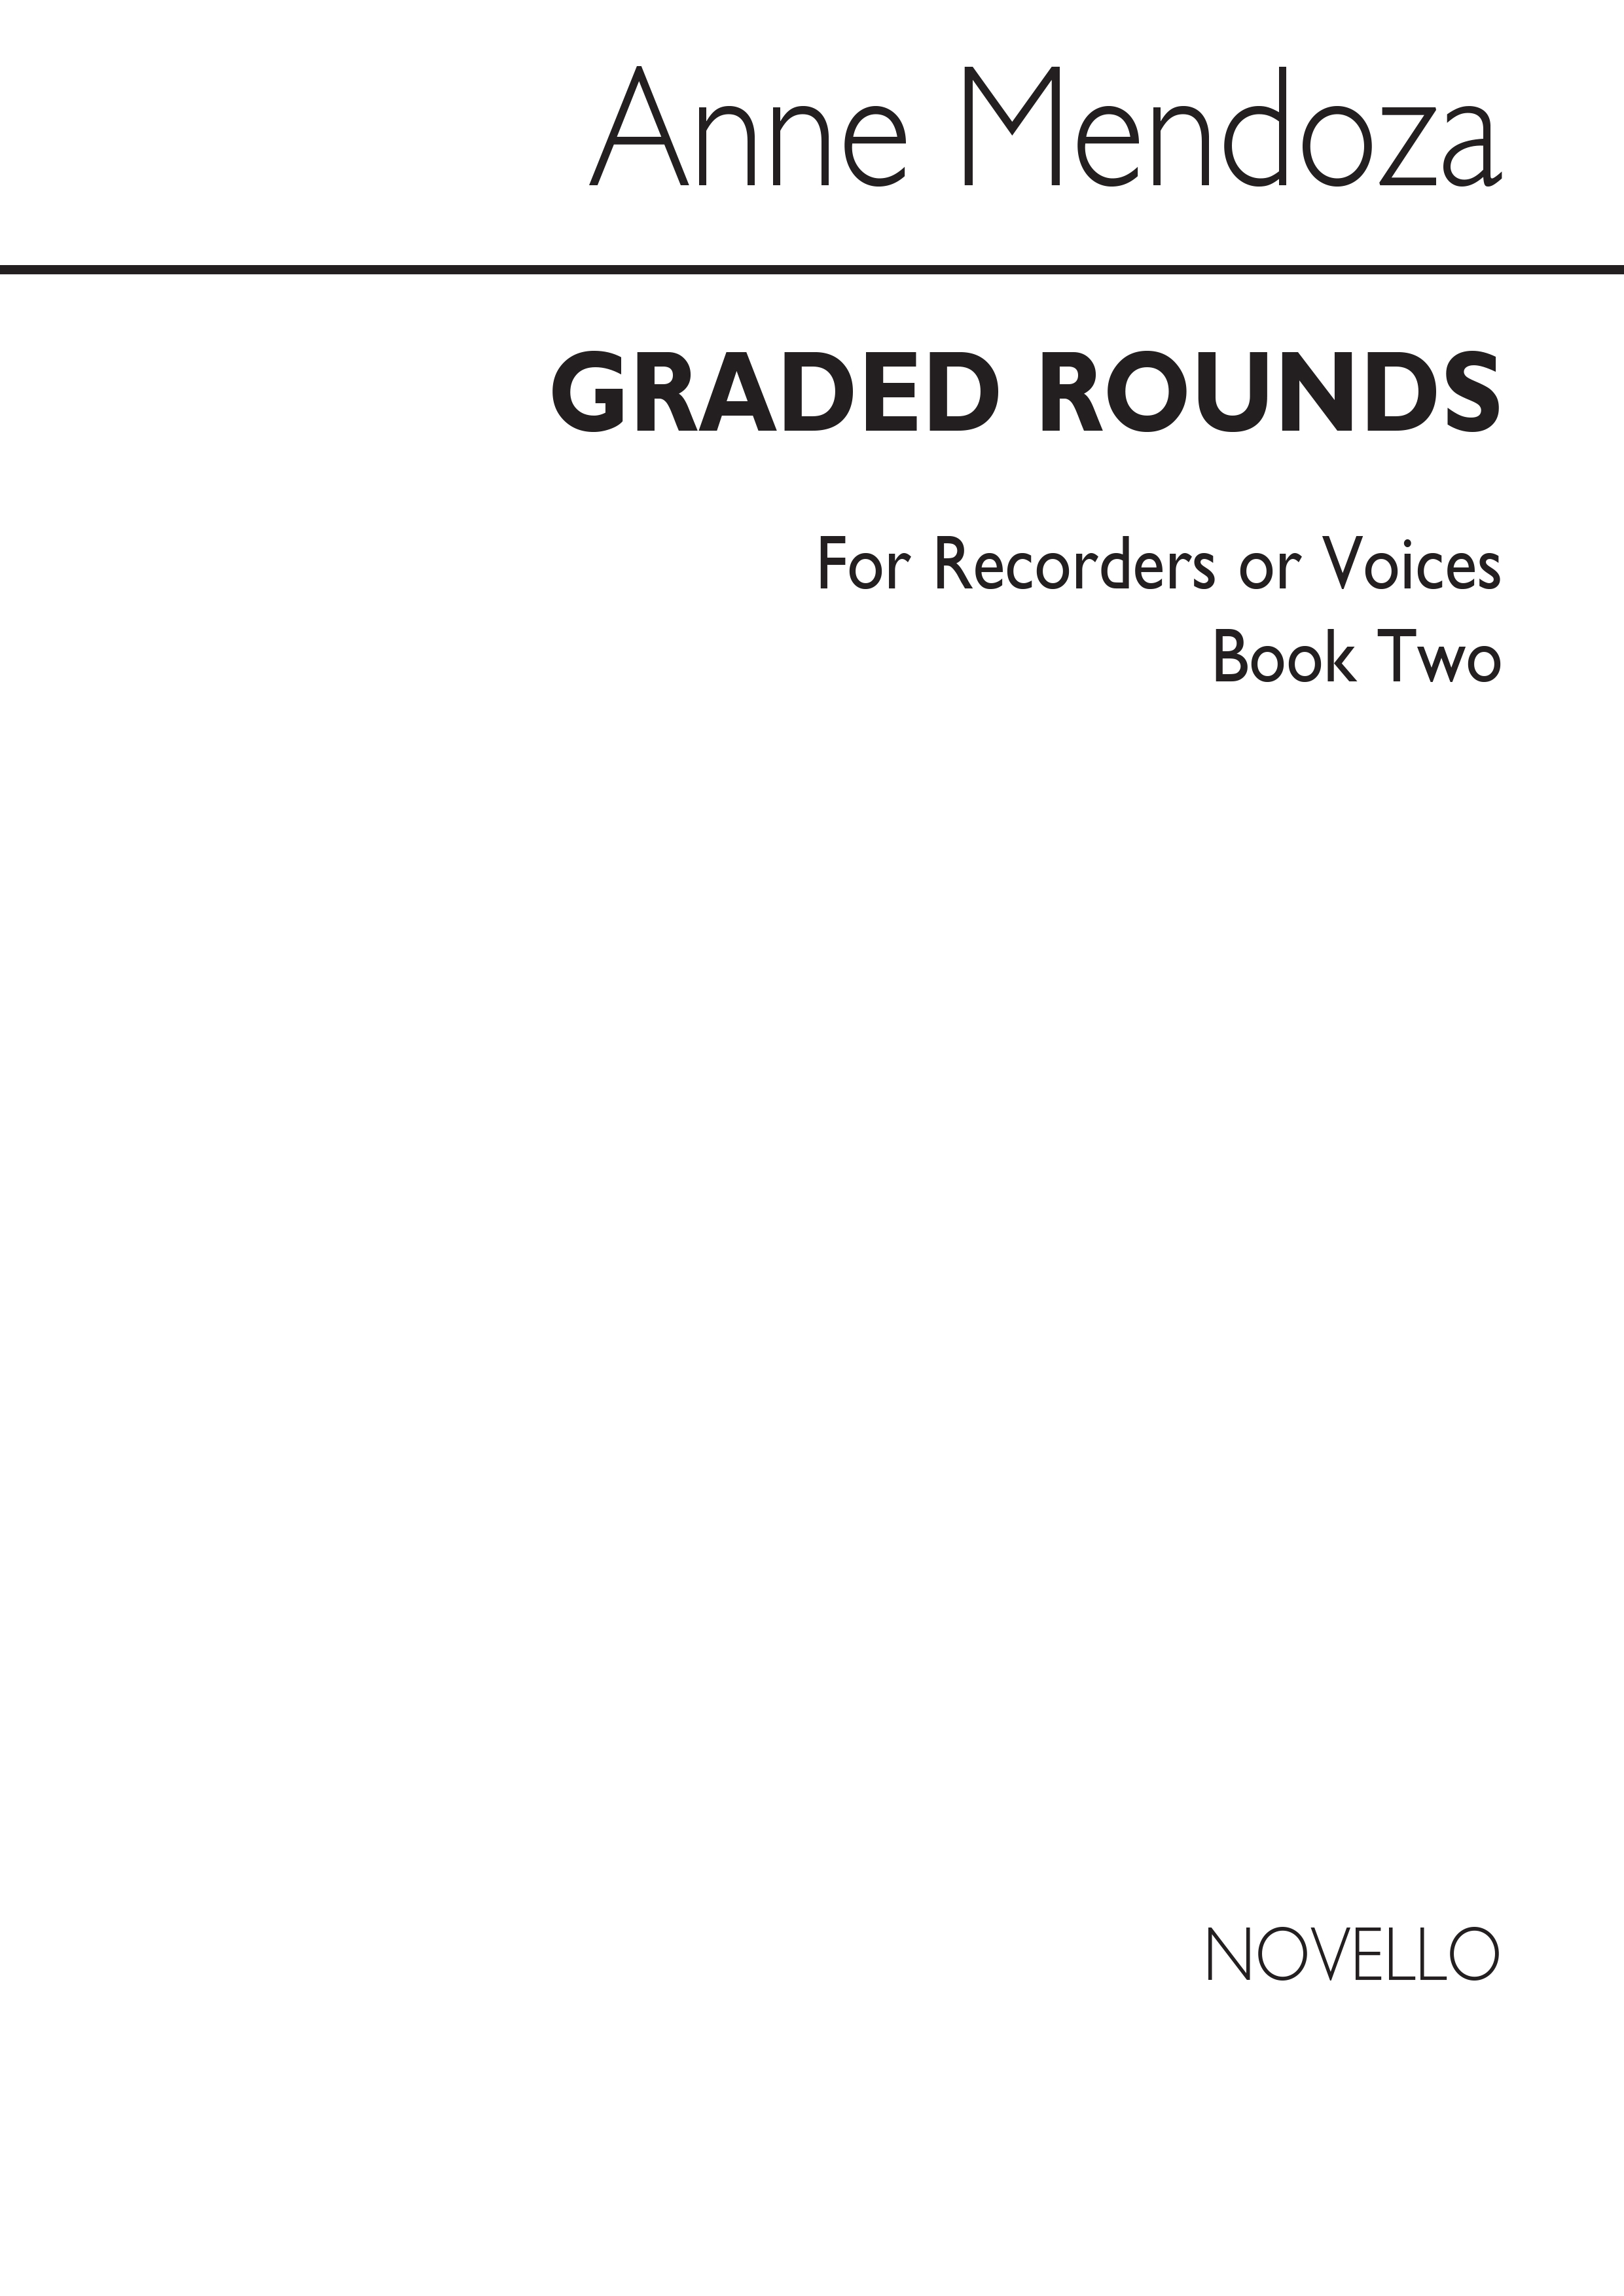 Mendoza: Graded Rounds Book 2